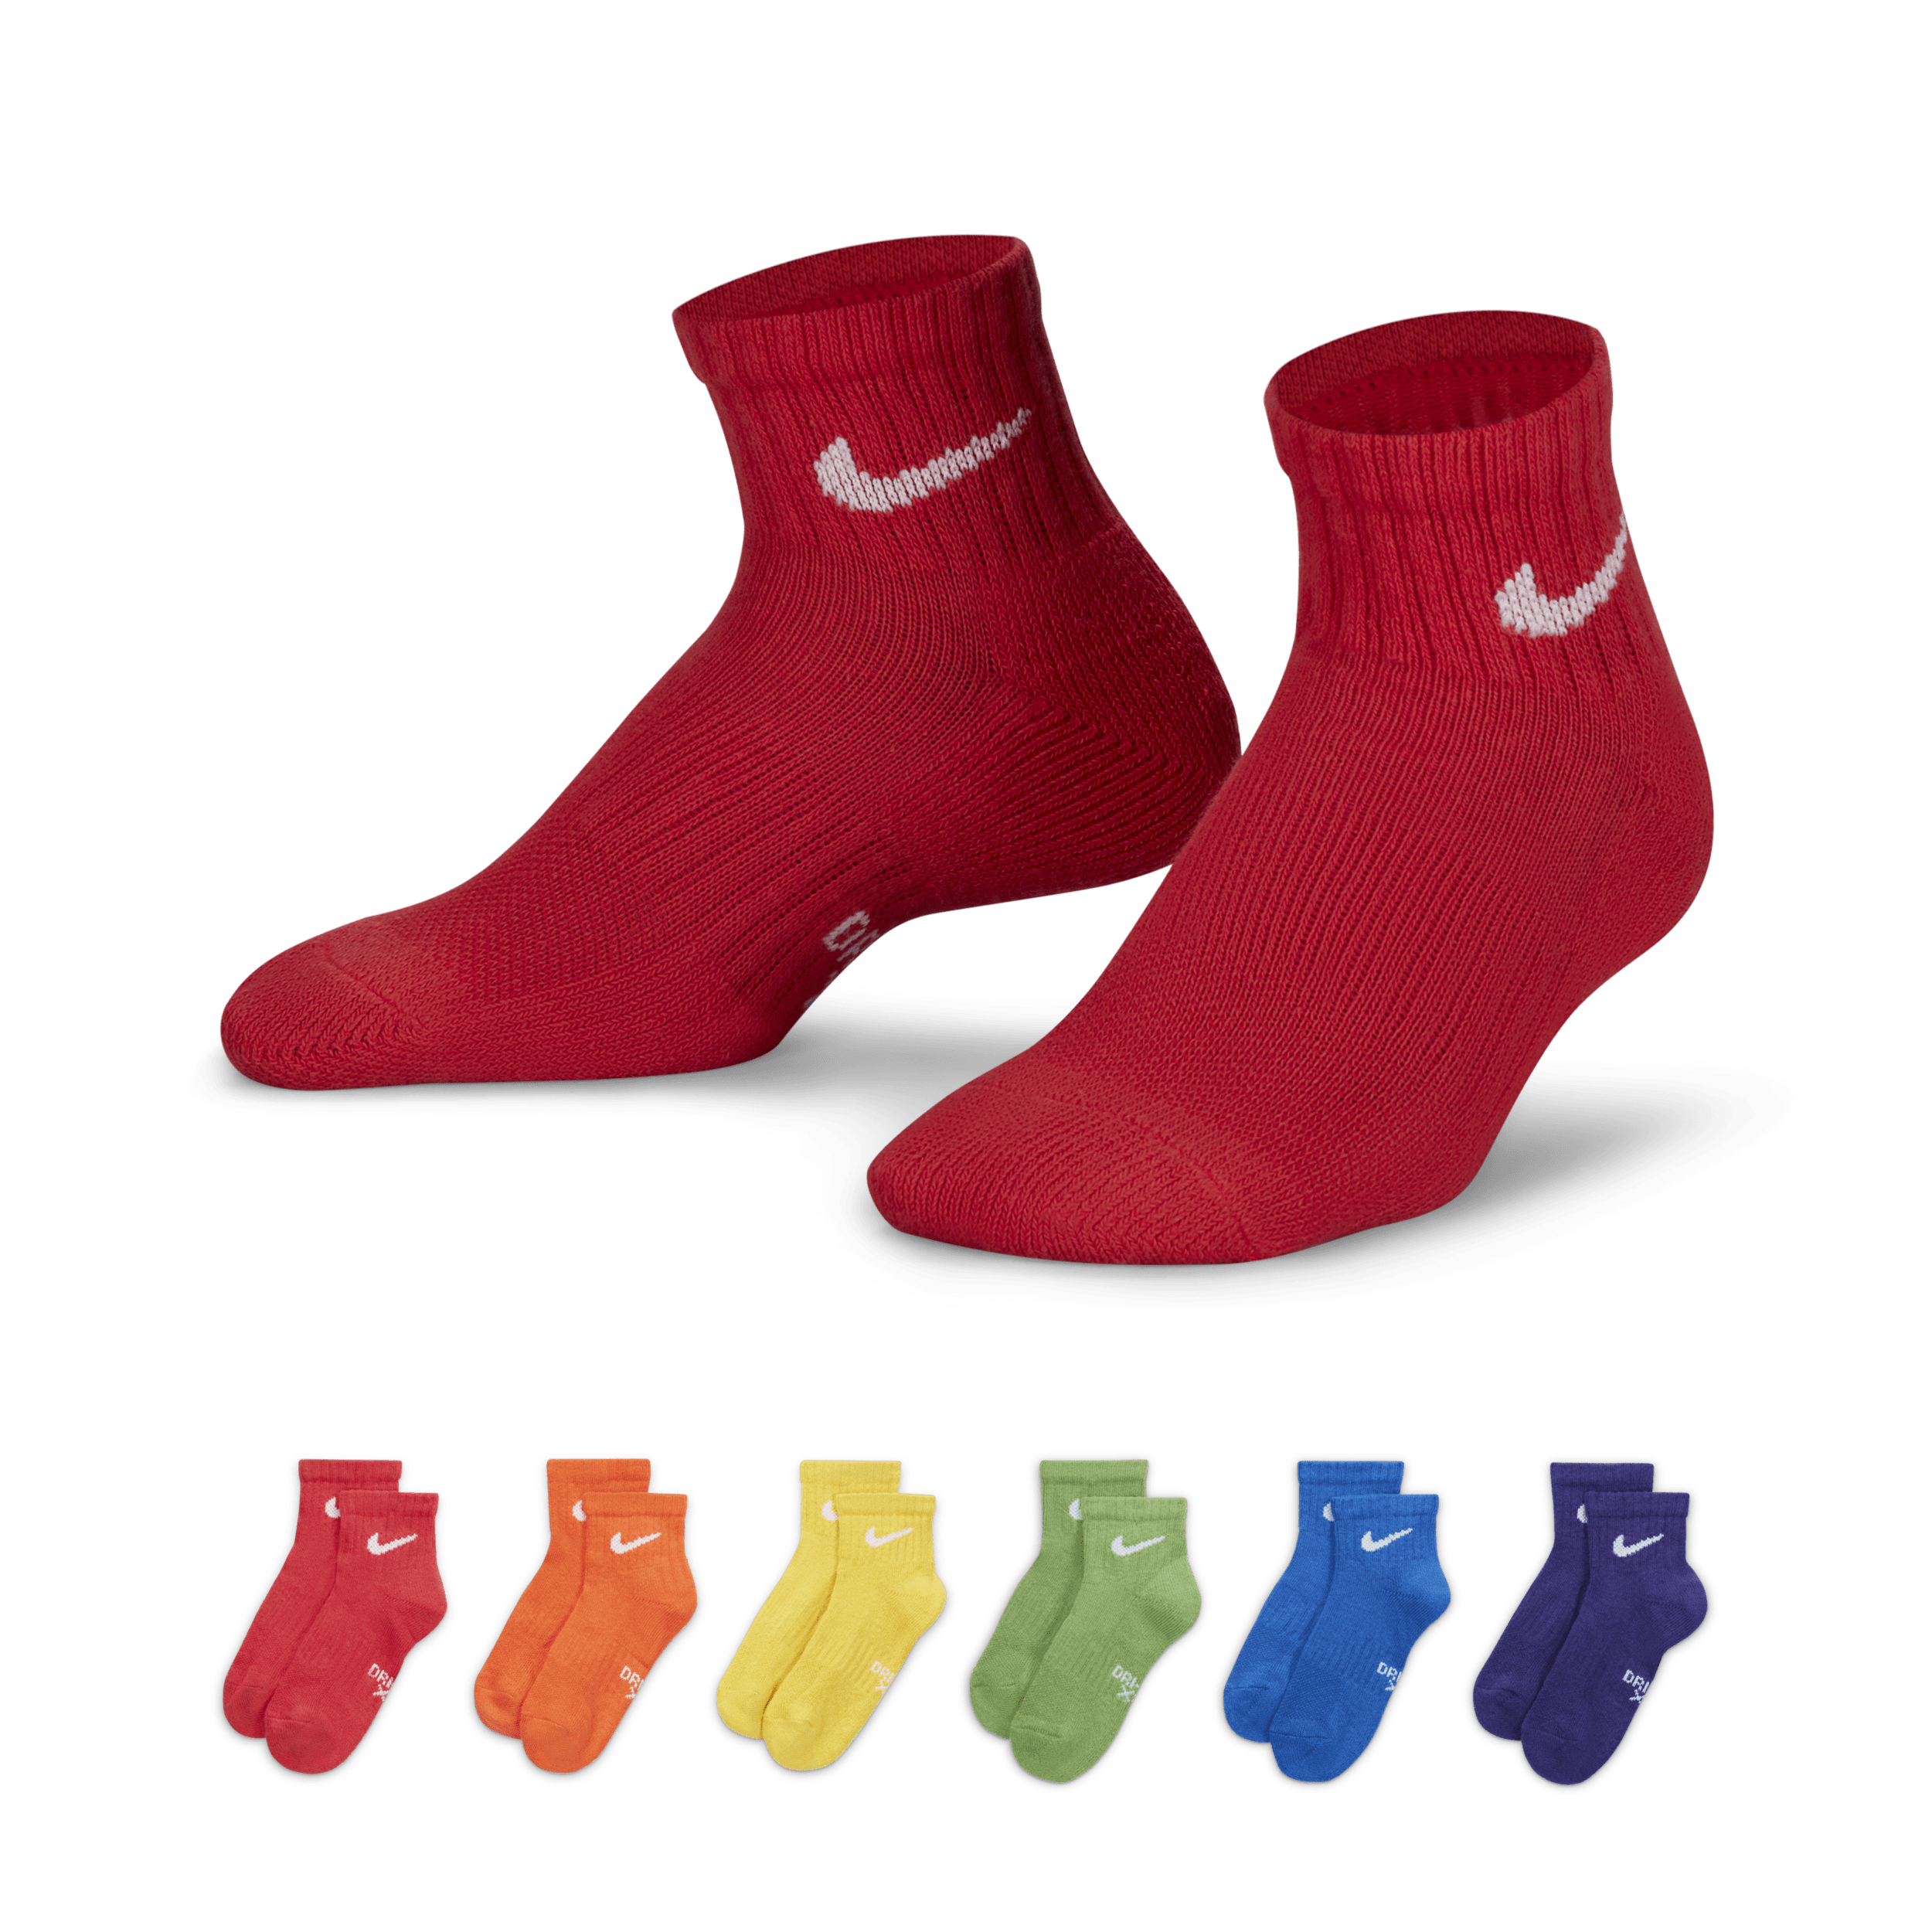 Nike Dri Fit Calcetines hasta el tobillo (Paquete de 6) - Niño/a pequeño/a - Multicolor